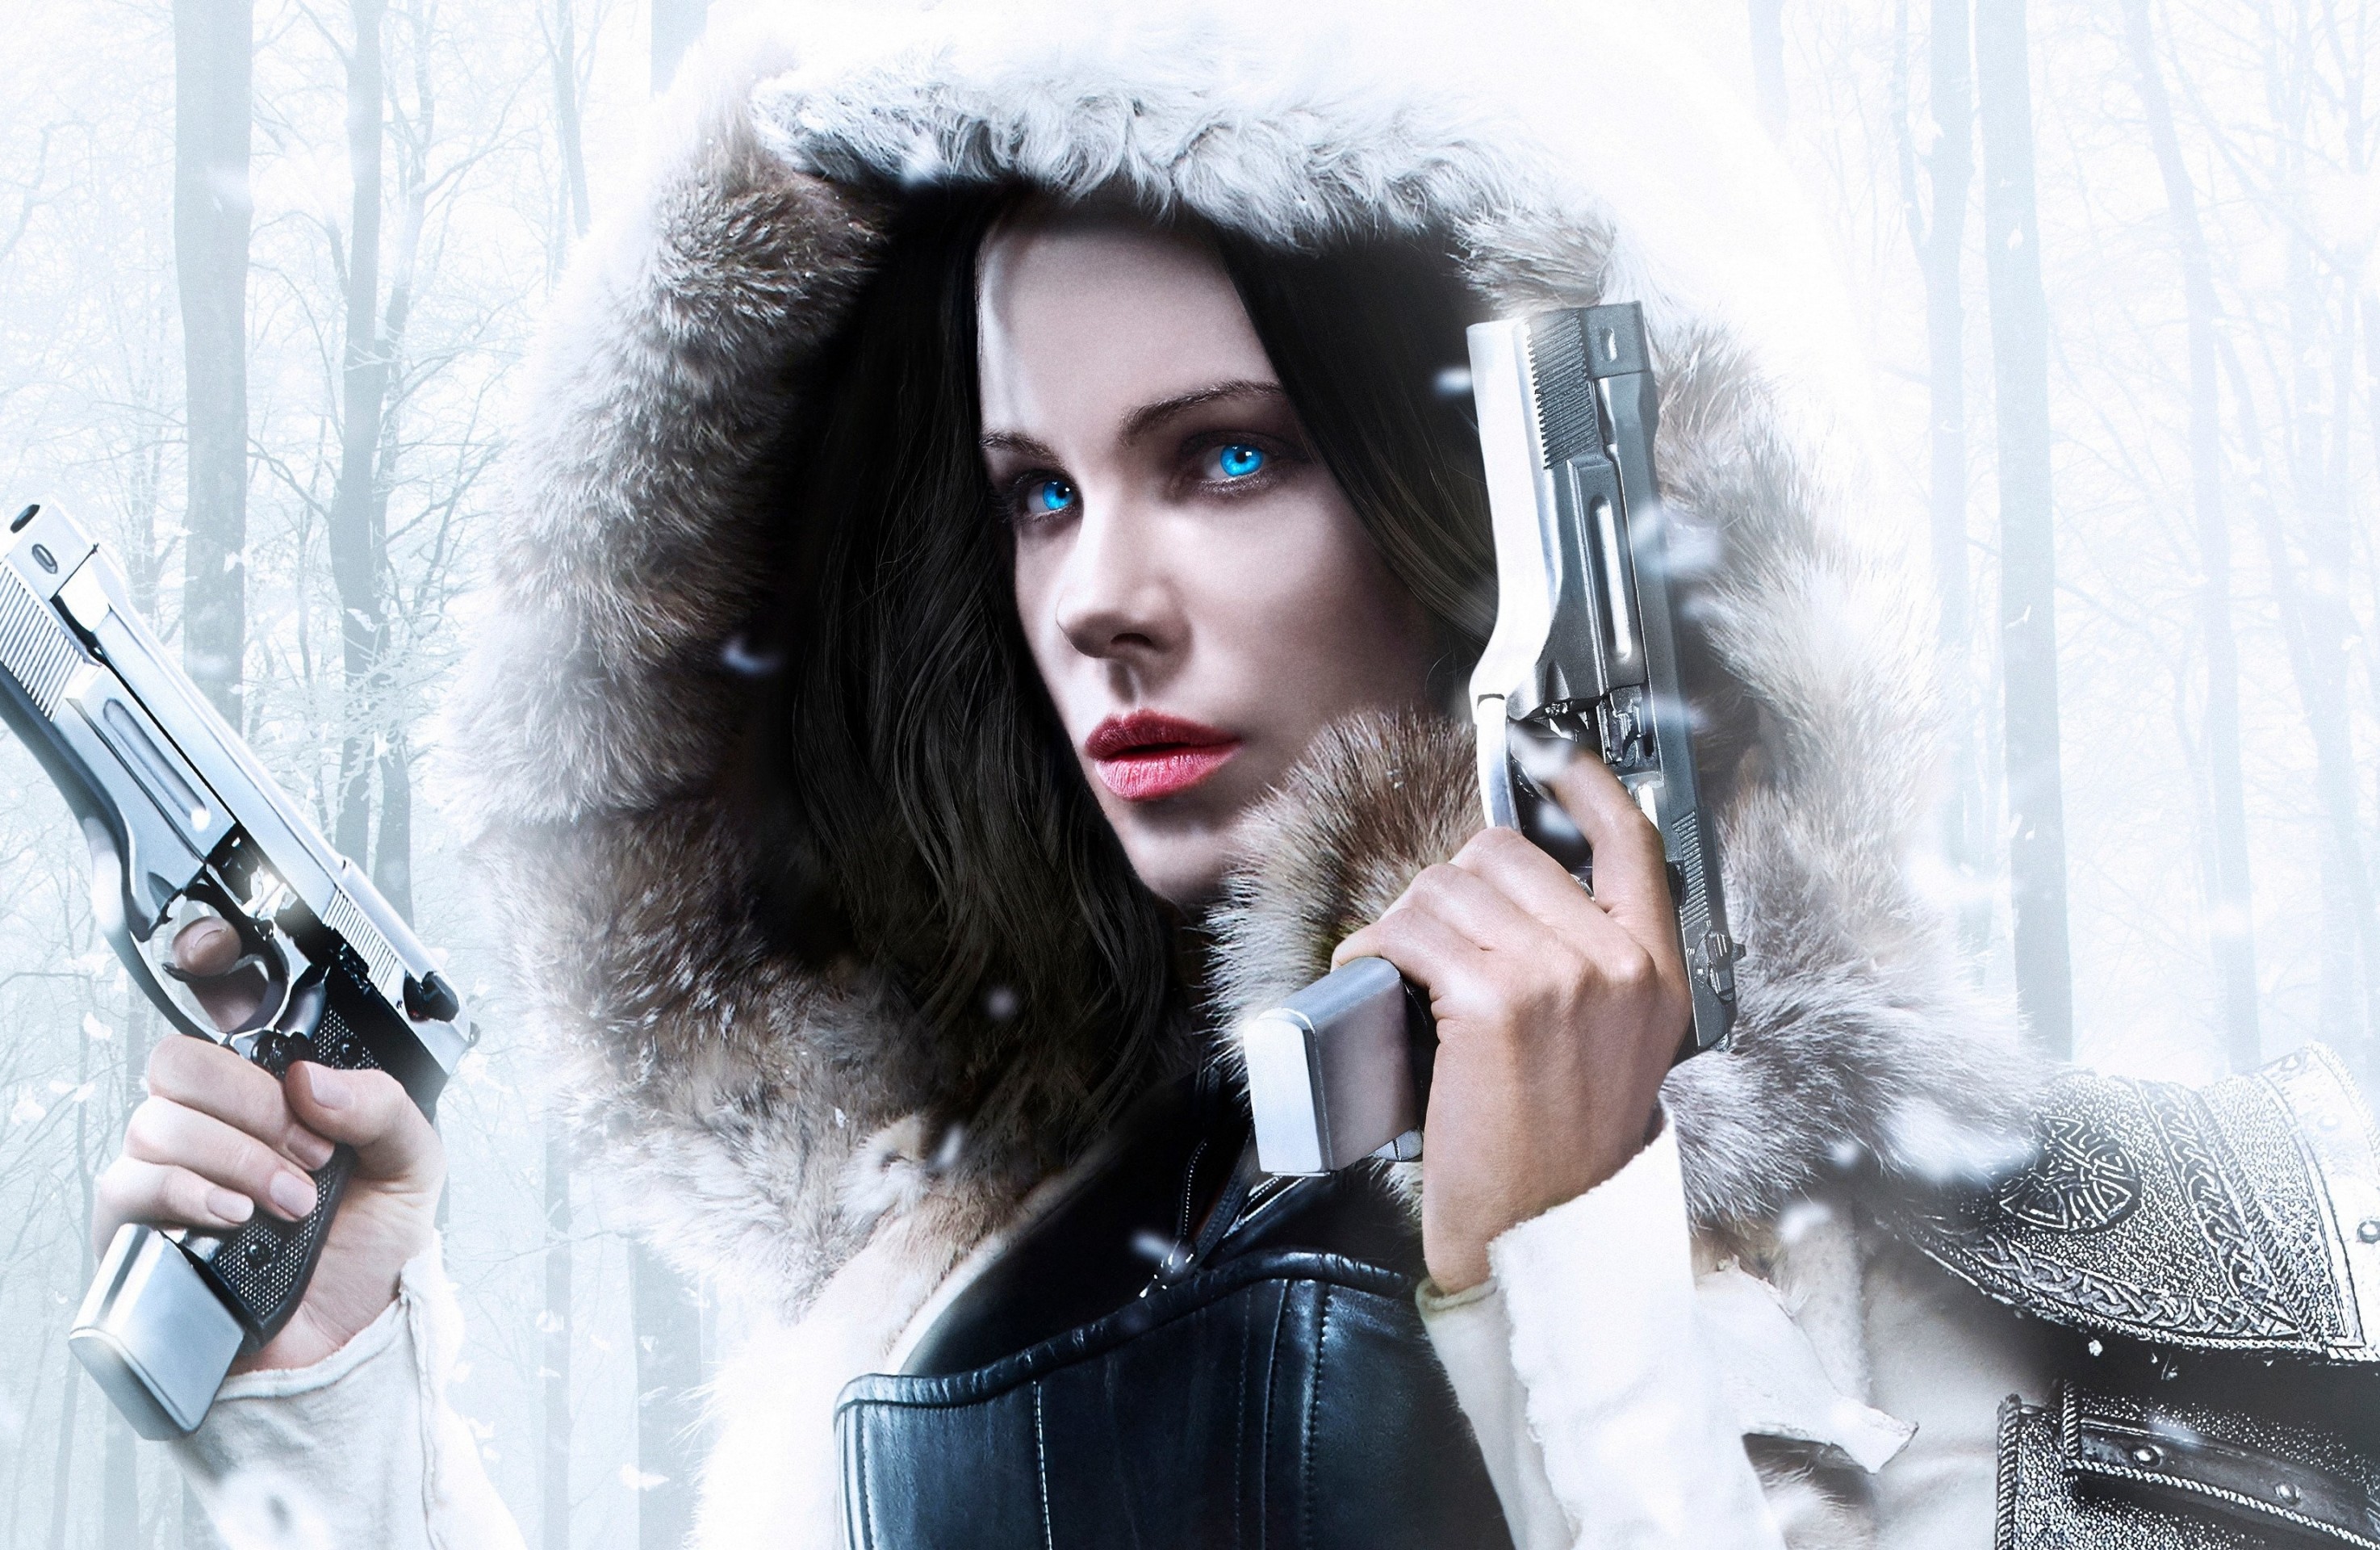 Blood Wars, Guns, Blue Eyes, Kate Beckinsale - Papel De Parede Anjo Da Noite , HD Wallpaper & Backgrounds